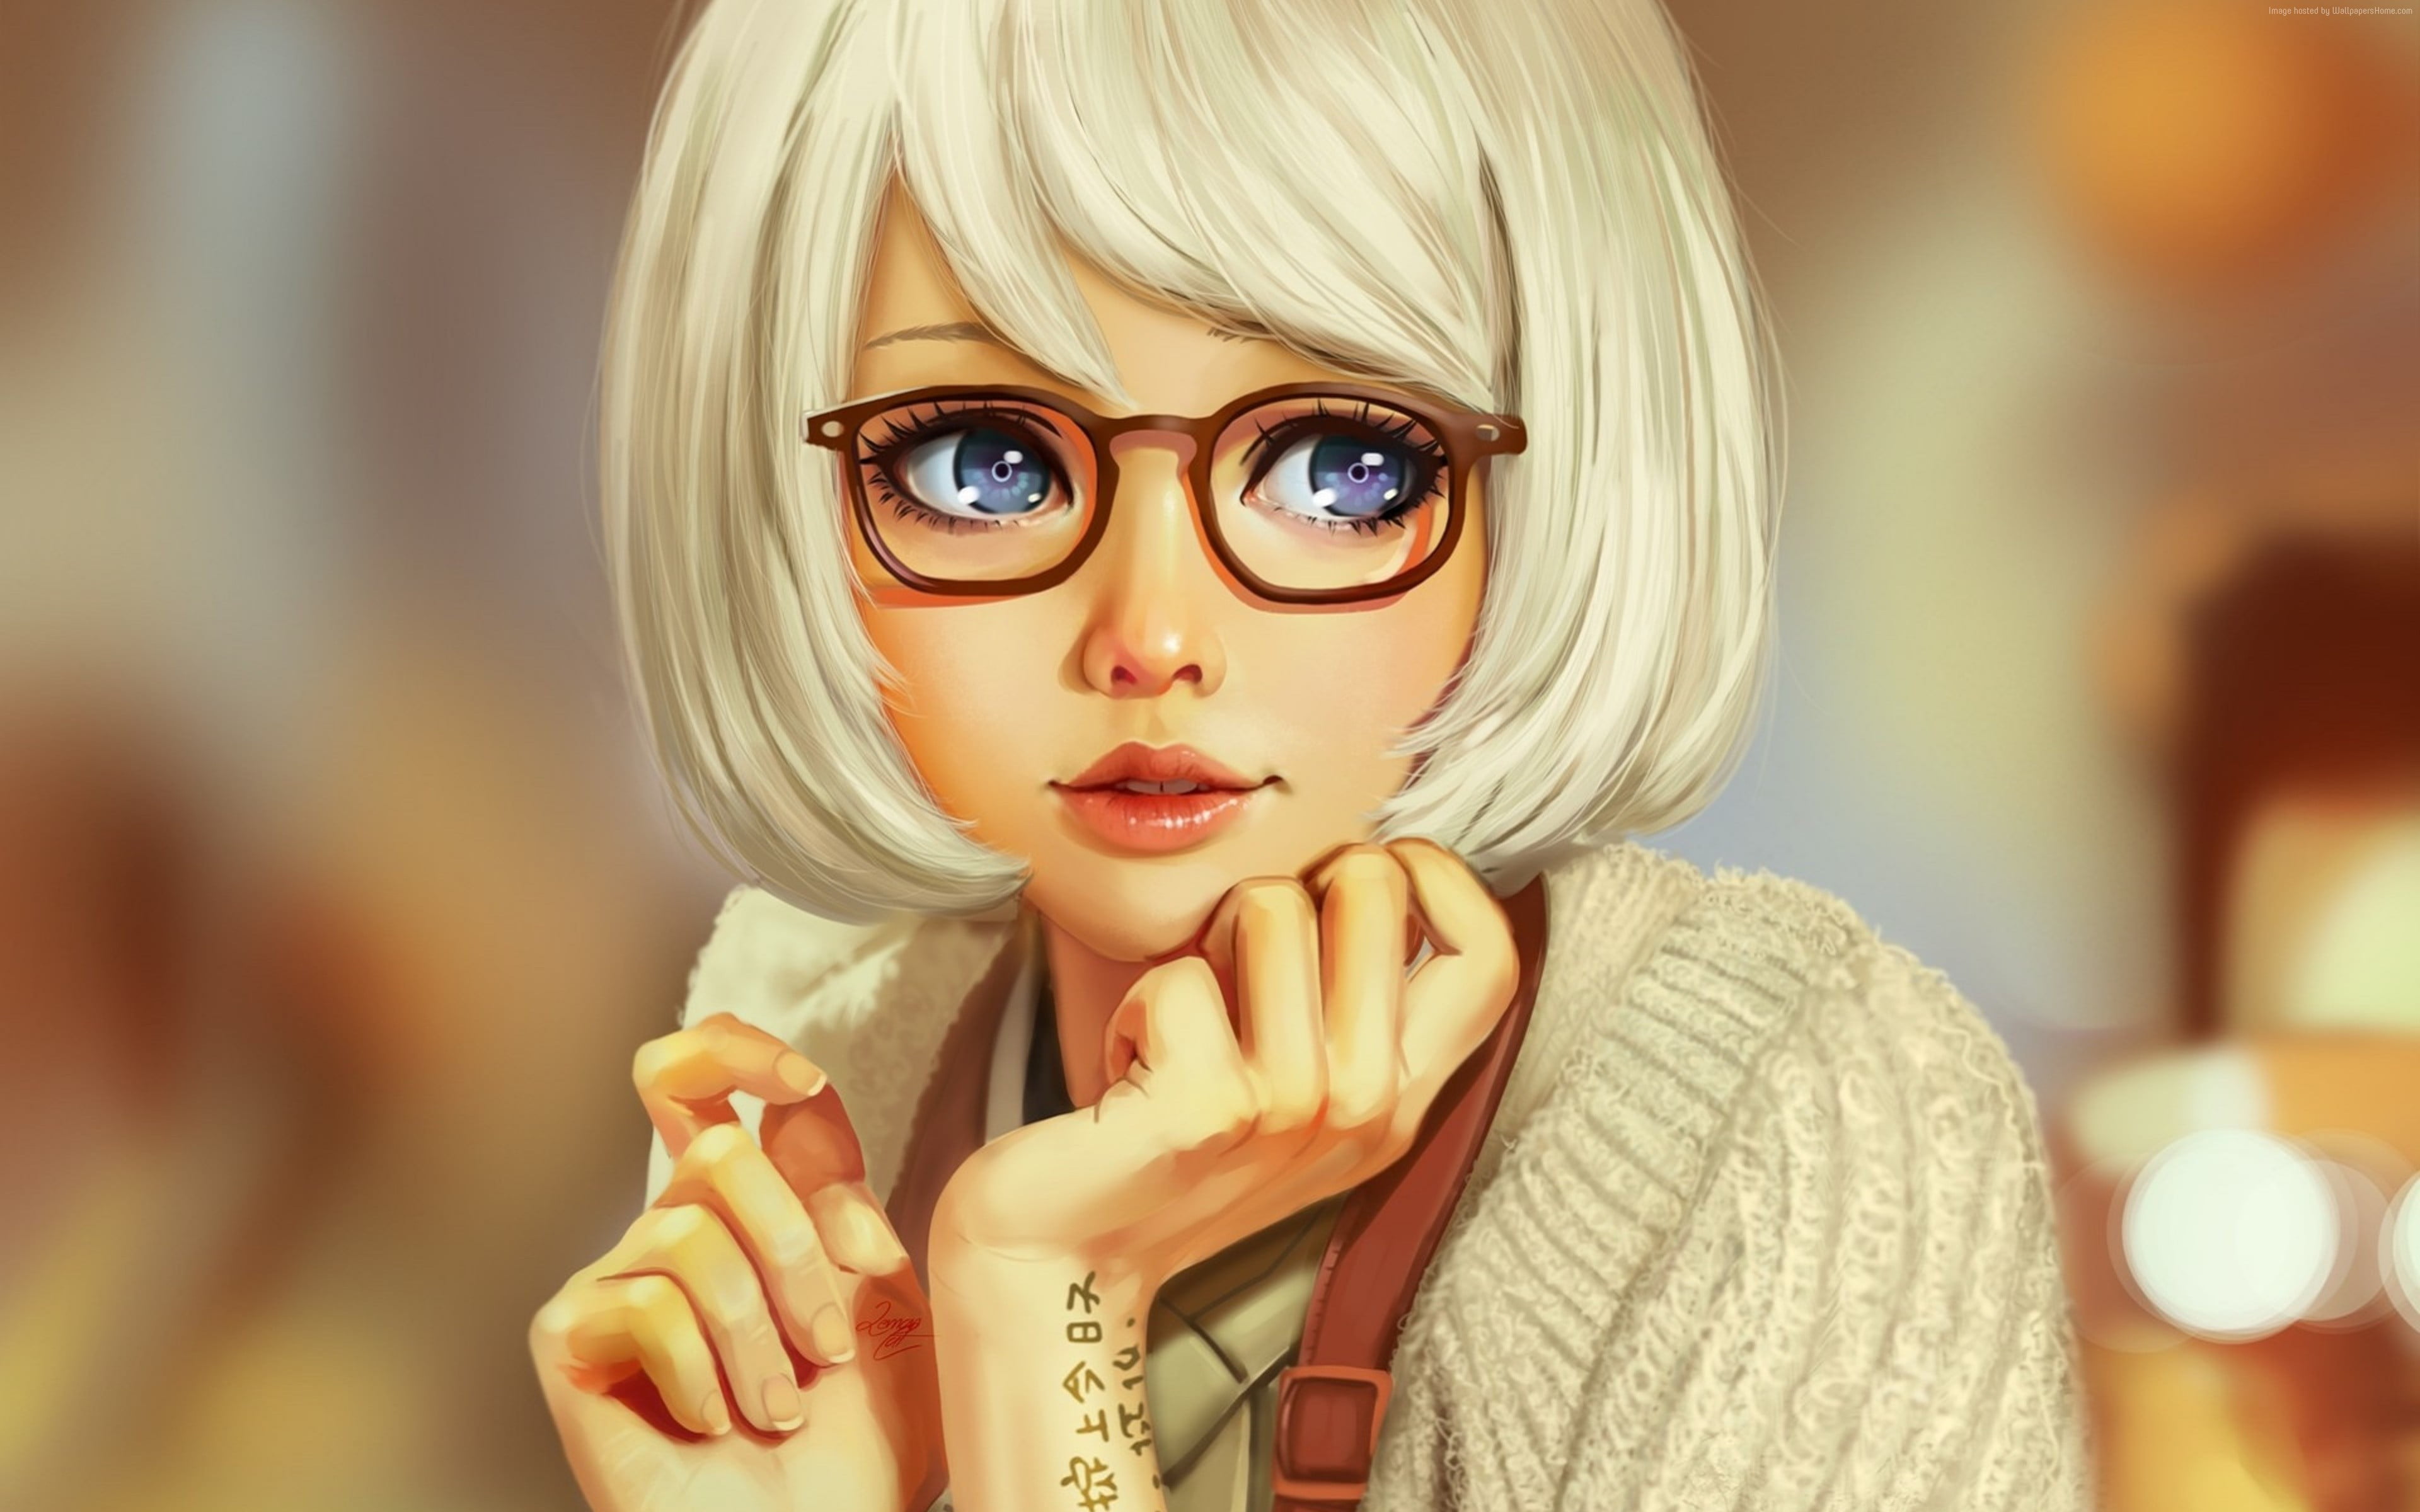 Картинка на аватарку для женщины прикольные. Девушка в очках. Мультяшная девочка в очках. Мультяшные блондинки. Мультяшная девушка в очках.